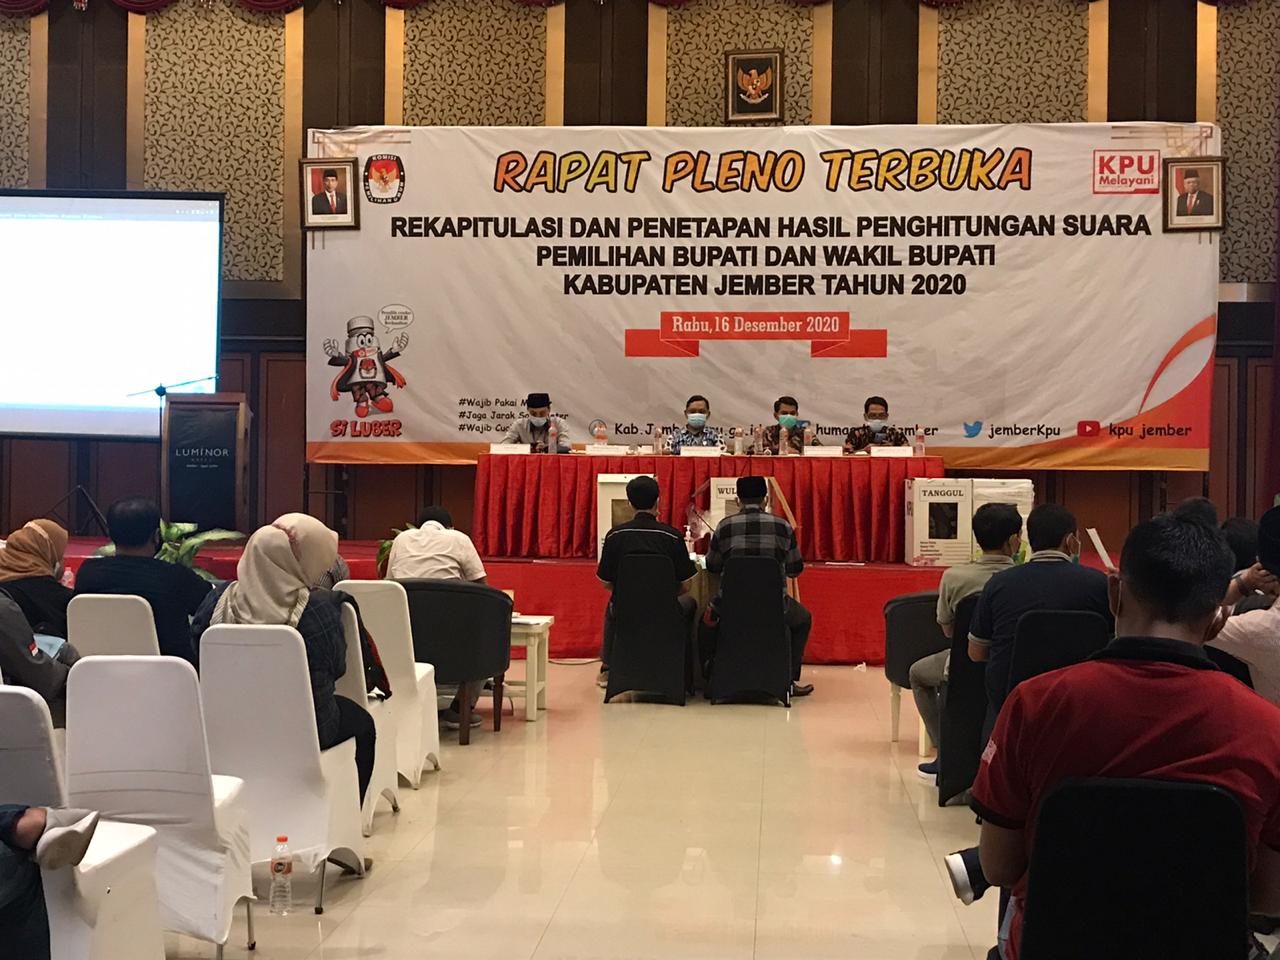 Rapat Pleno Terbuka Hasil Rekapitulasi Surat Suara Tingkat Kabupaten Jember, Kamis (17/12/2020).